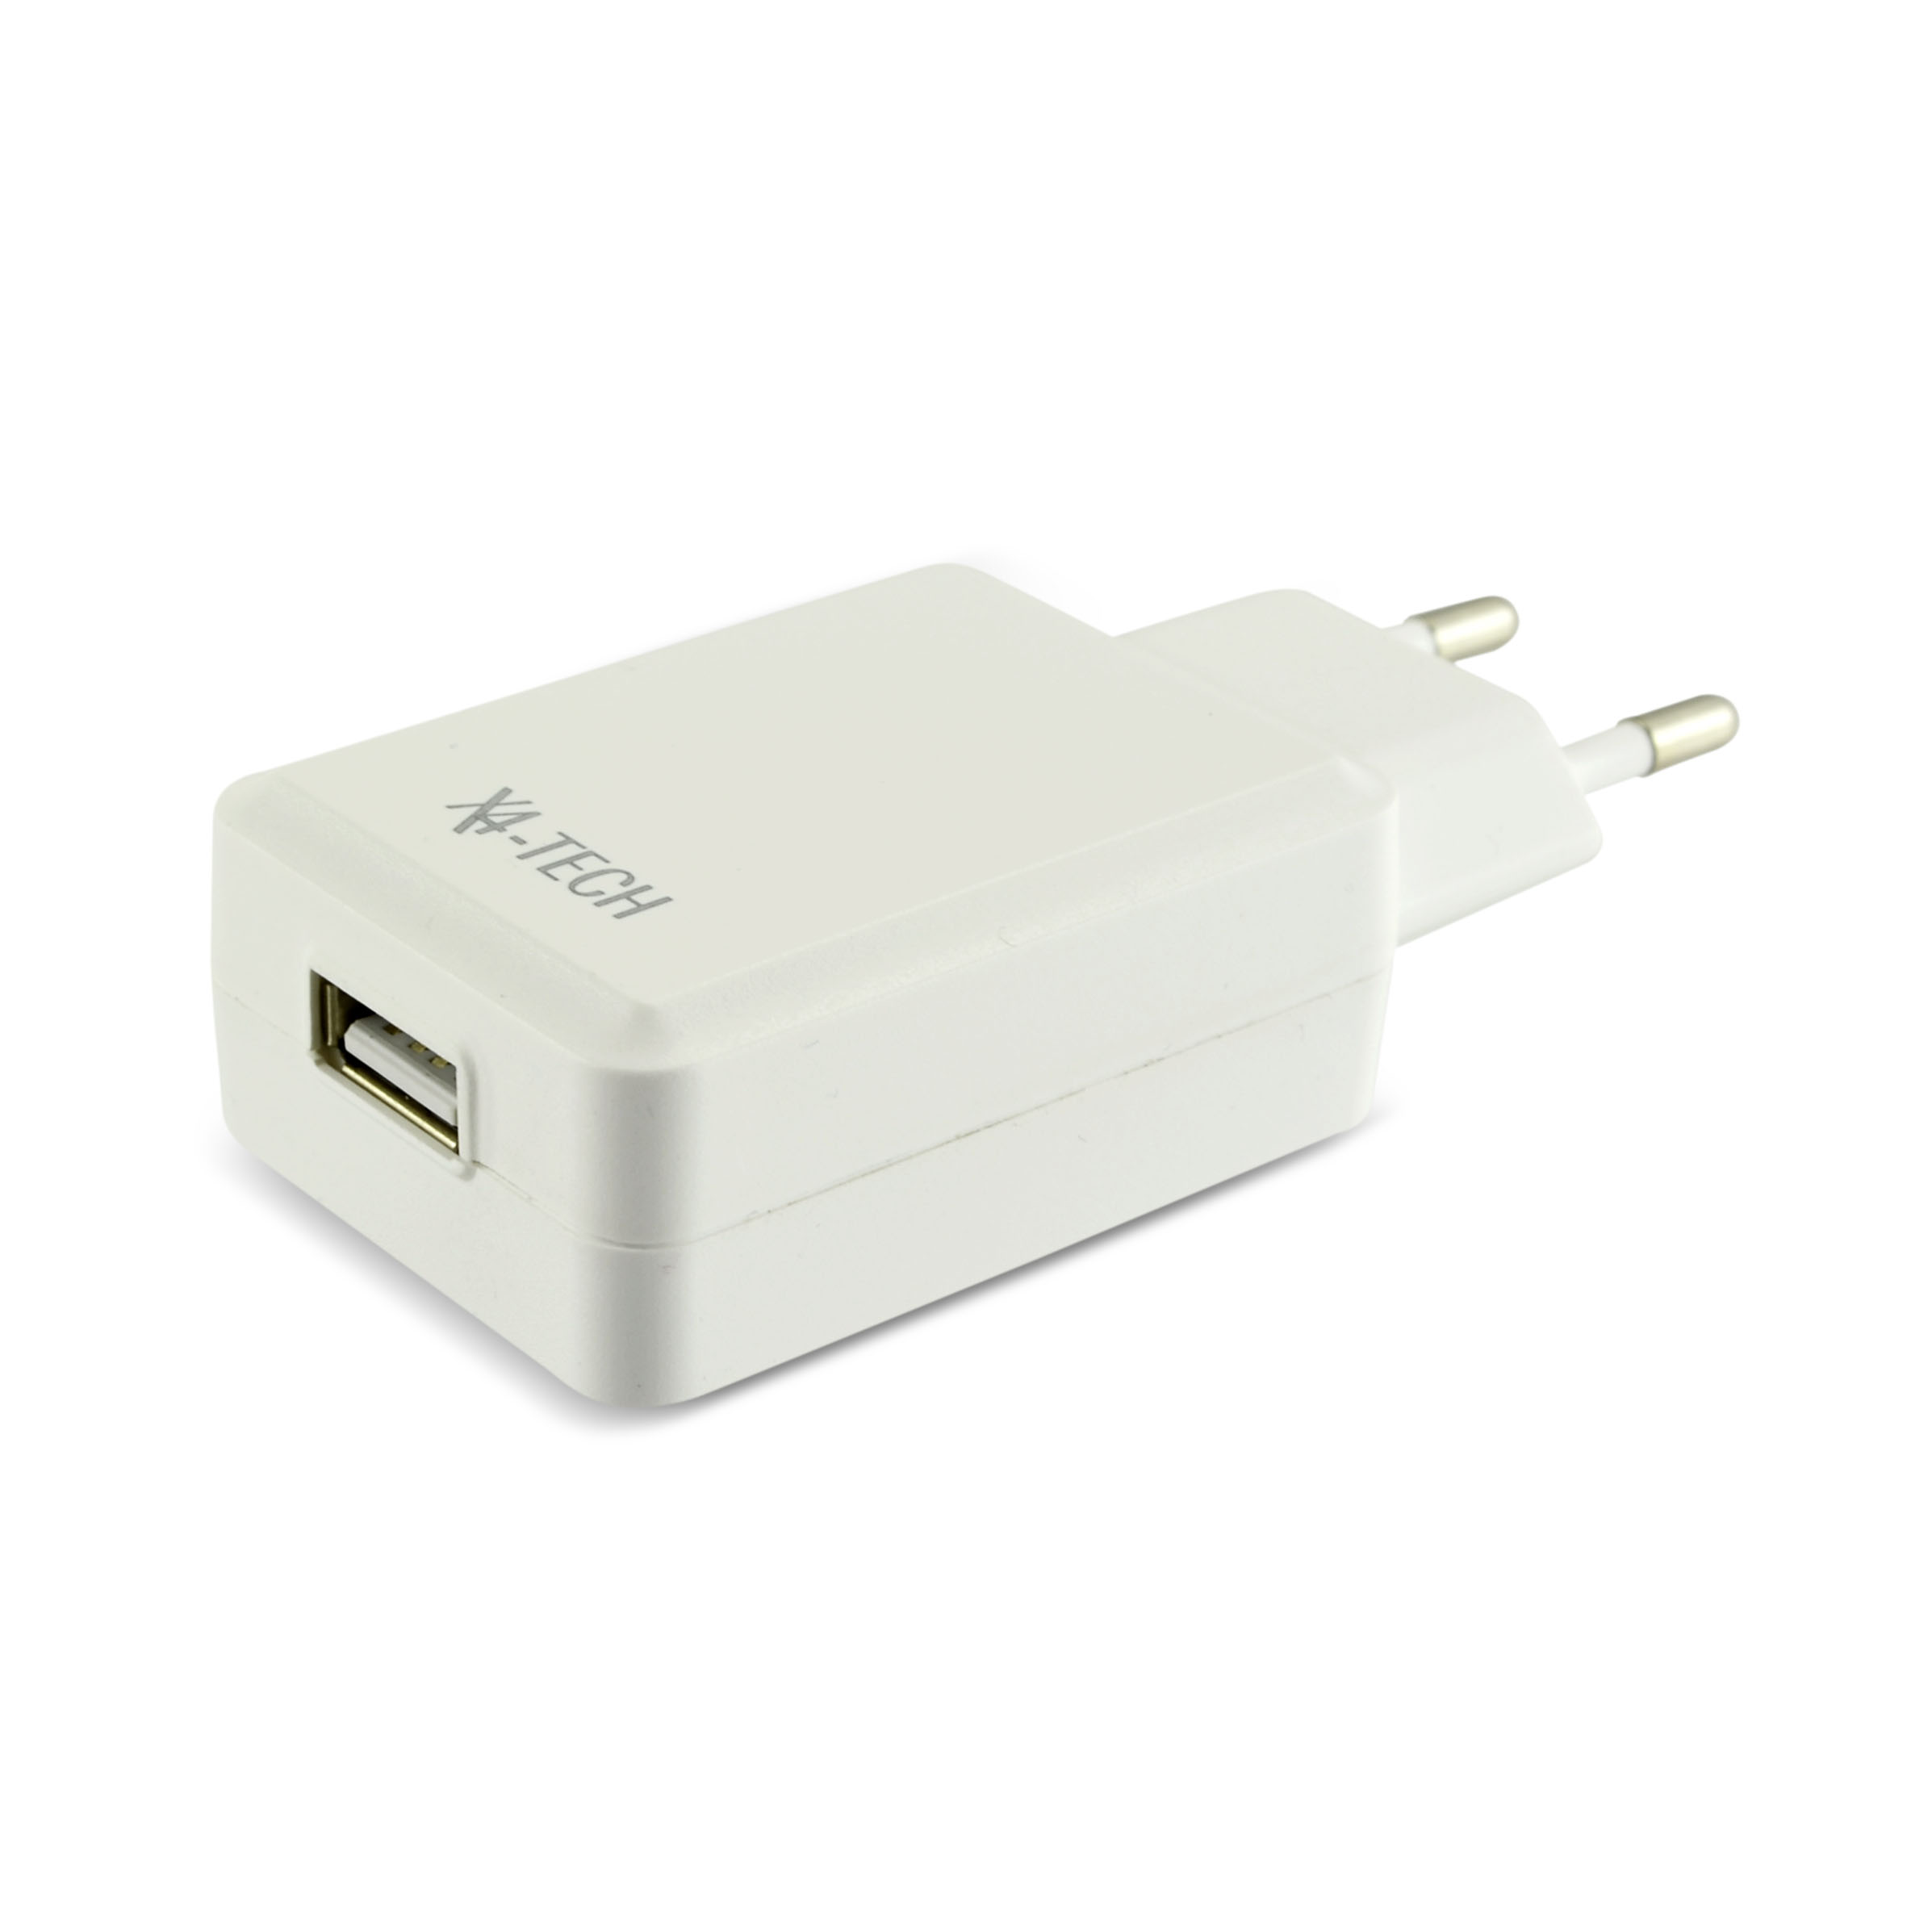 X4-TECH USB Netzteil Ladegerät - Steckdosen Adapter Flach Weiß 5 V 1a